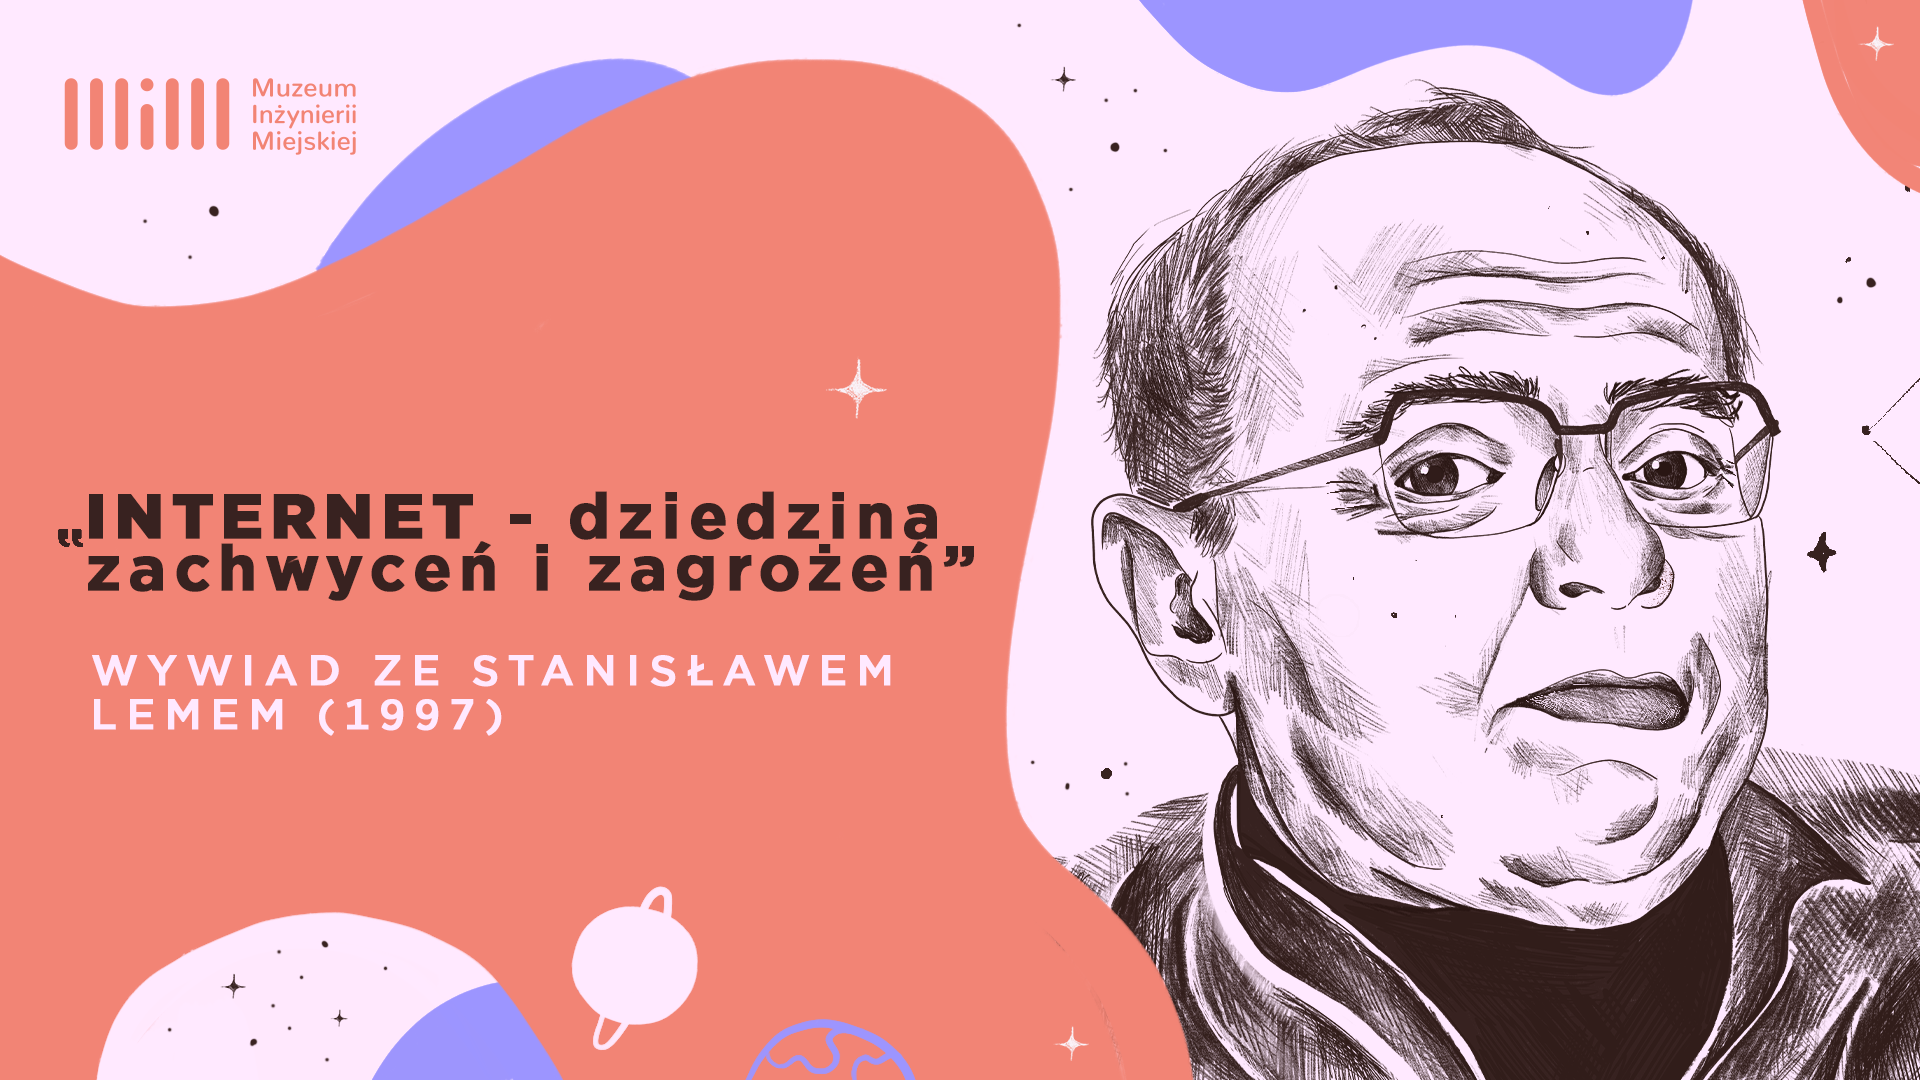 Internet – dziedzina zachwytów i zagrożeń - premiera wywiadu ze Stanisławem Lemem w stulecie jego urodzin!